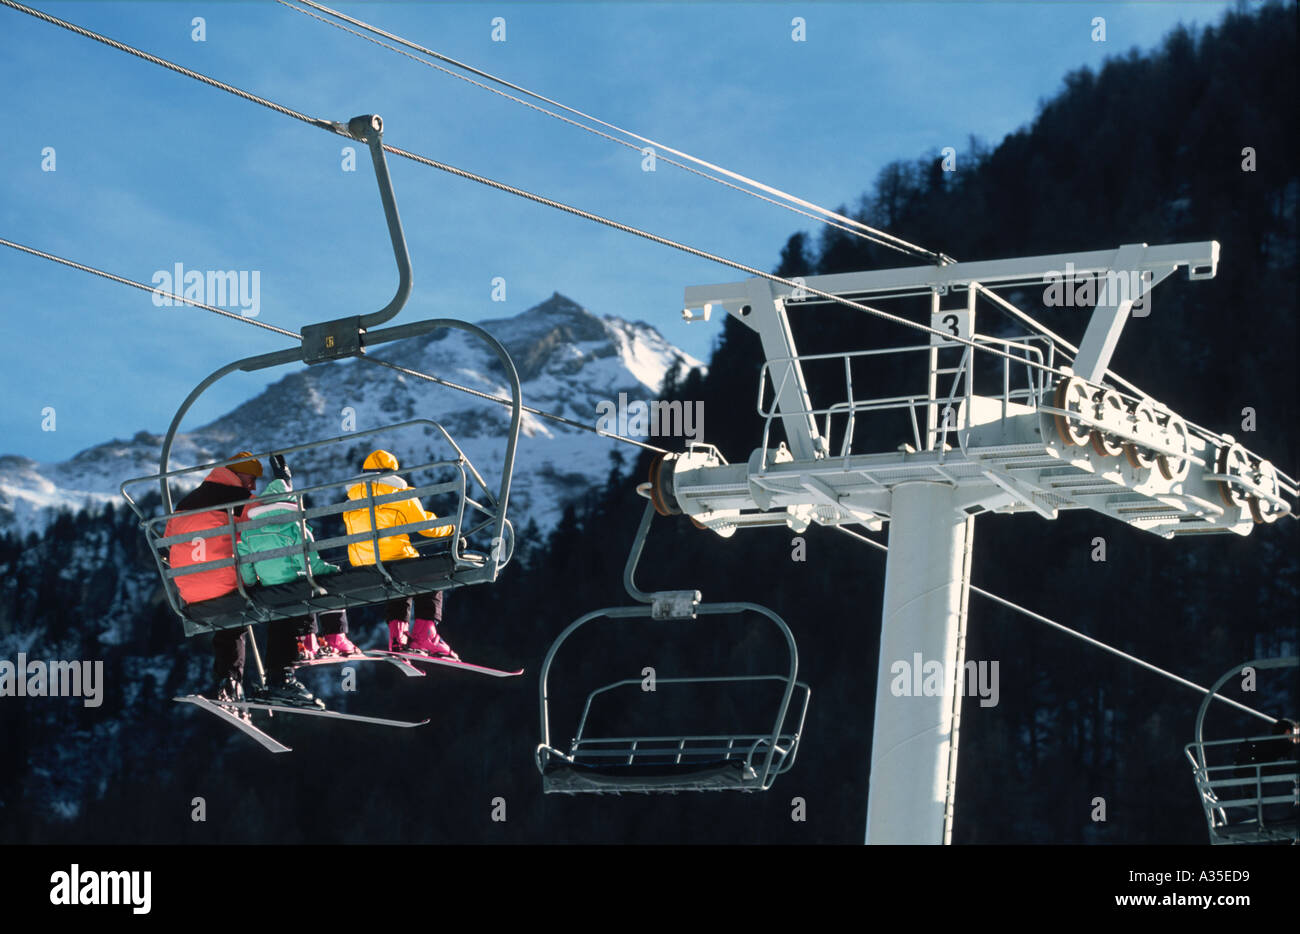 Remontée mécanique en plein air. Skieurs à bord, temps ensoleillé. Station de ski. Vacances D'Hiver Banque D'Images